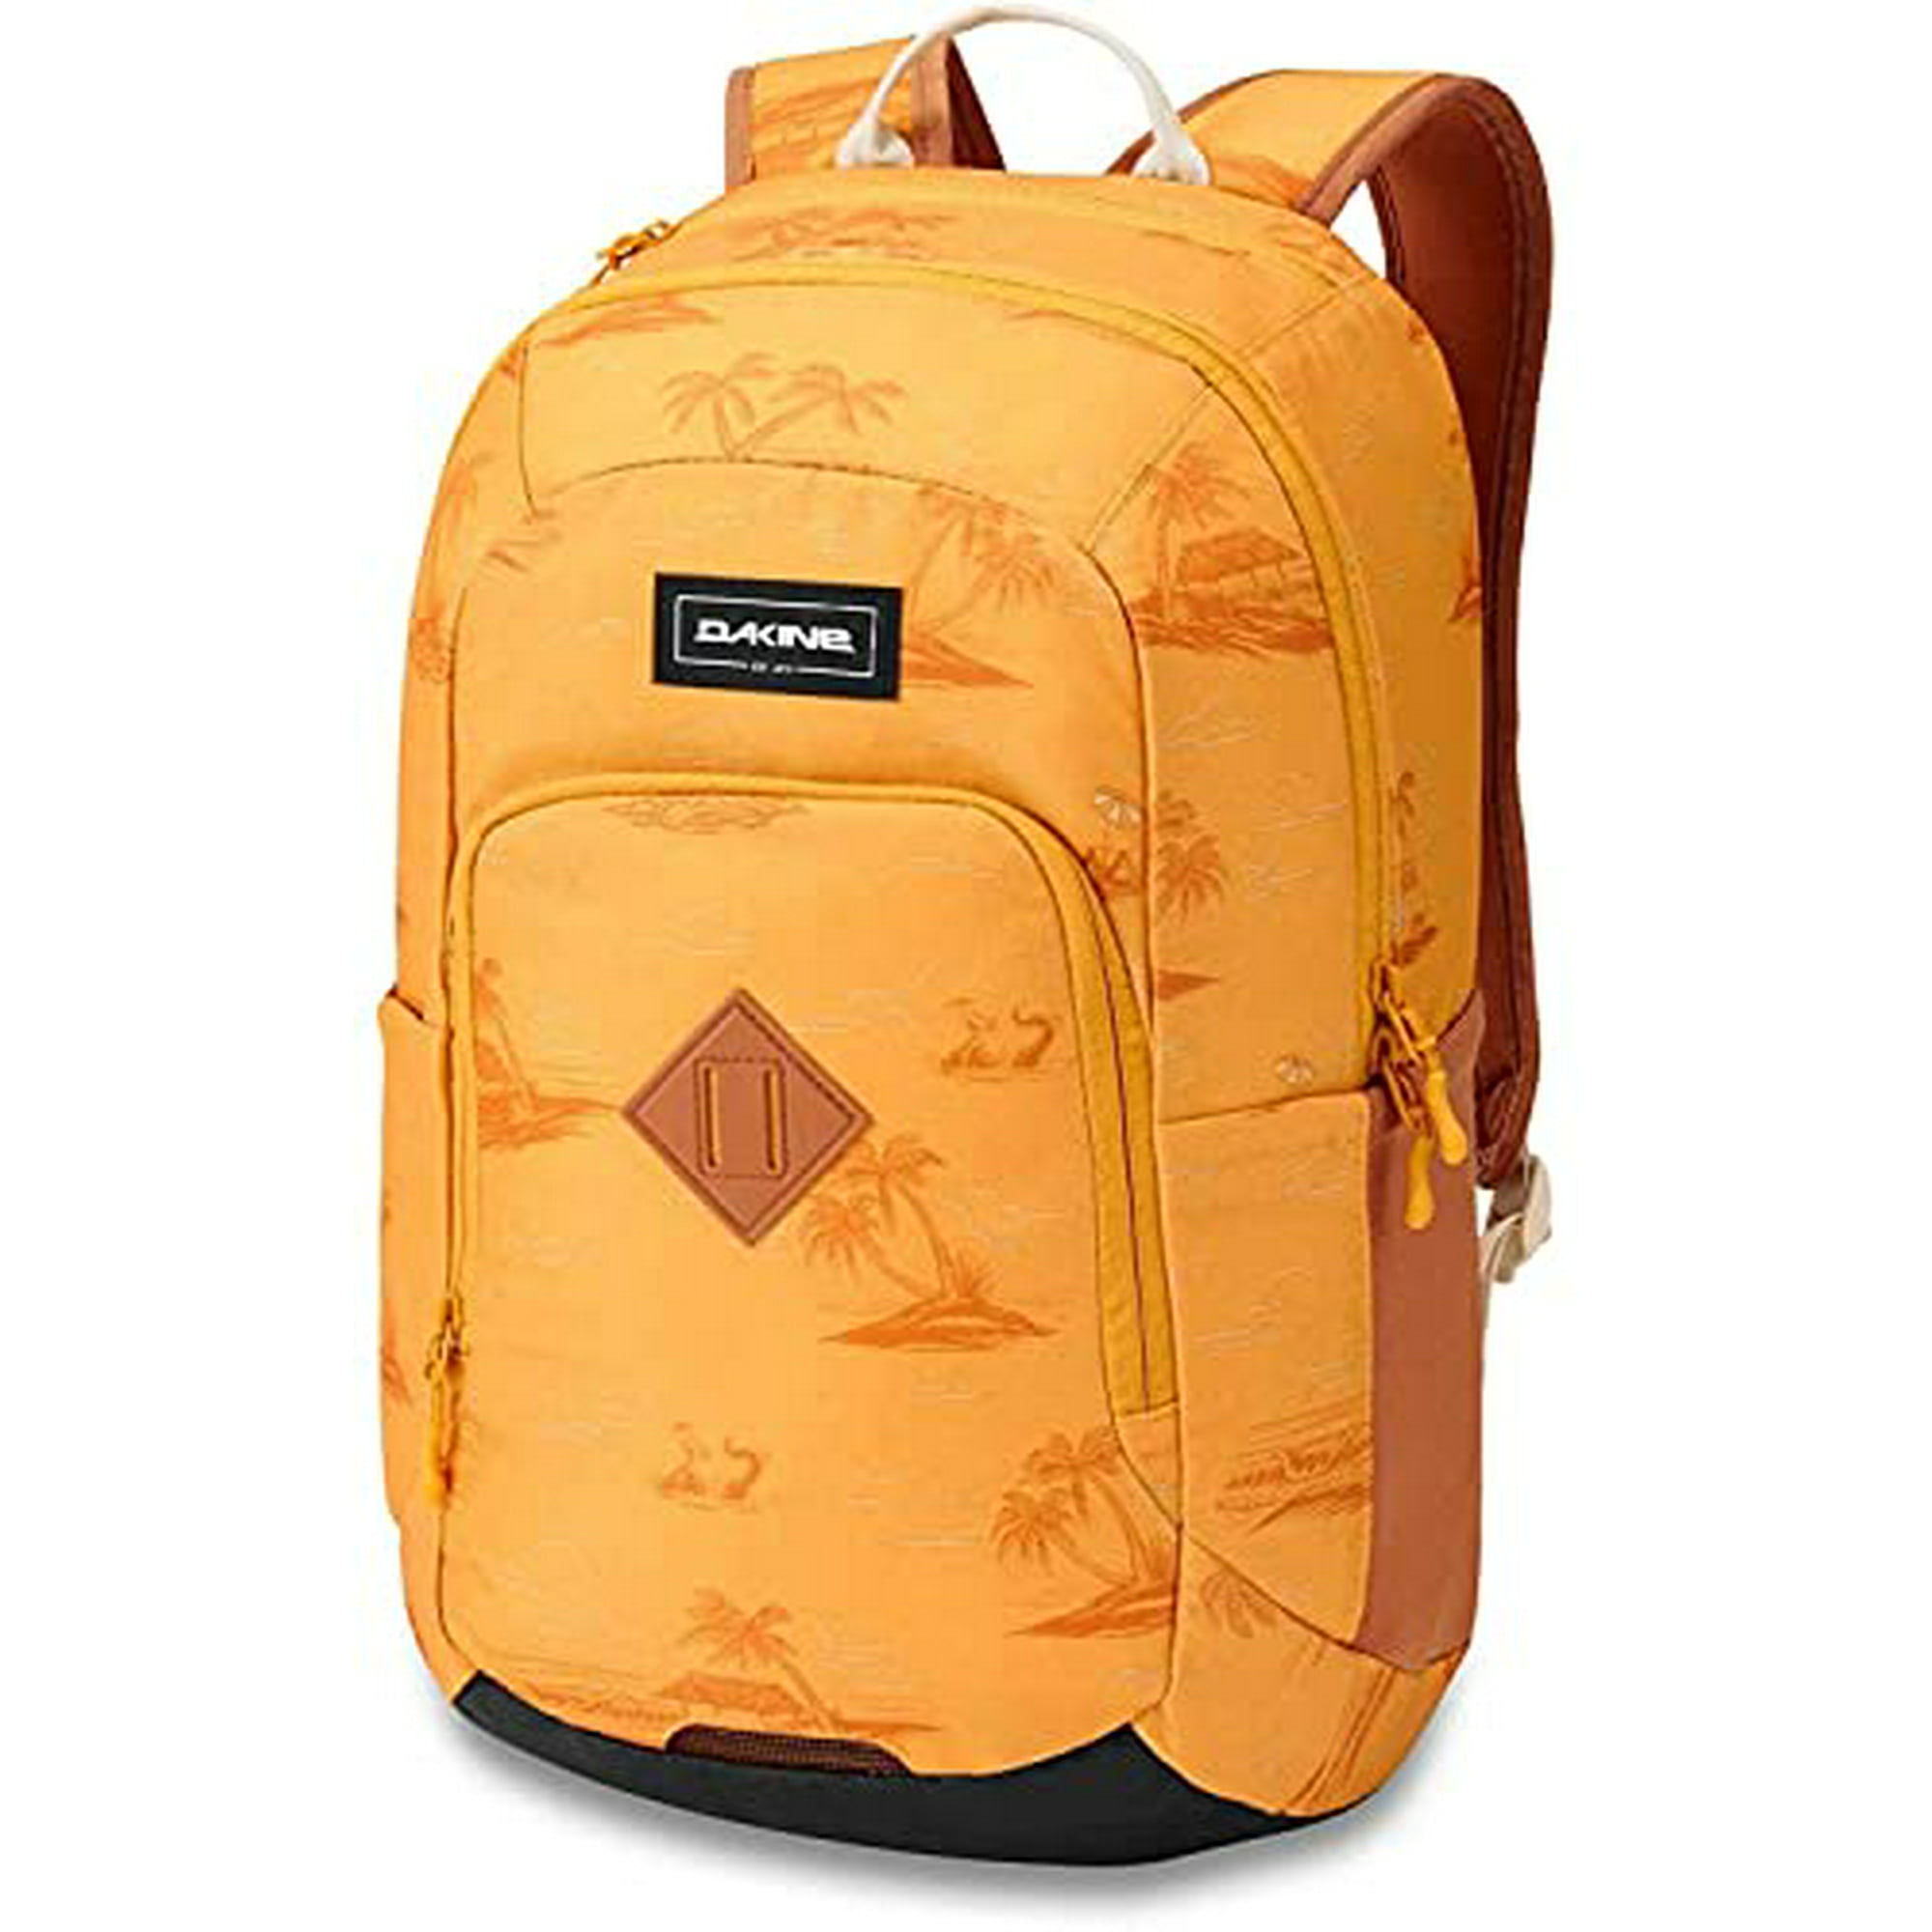 Dakine Mission Surf Pack 30L 30 Litre Capacity Backpack Rucksack Bag - Oceanfront - Unisex - Organizer Pocket | Walmart Canada